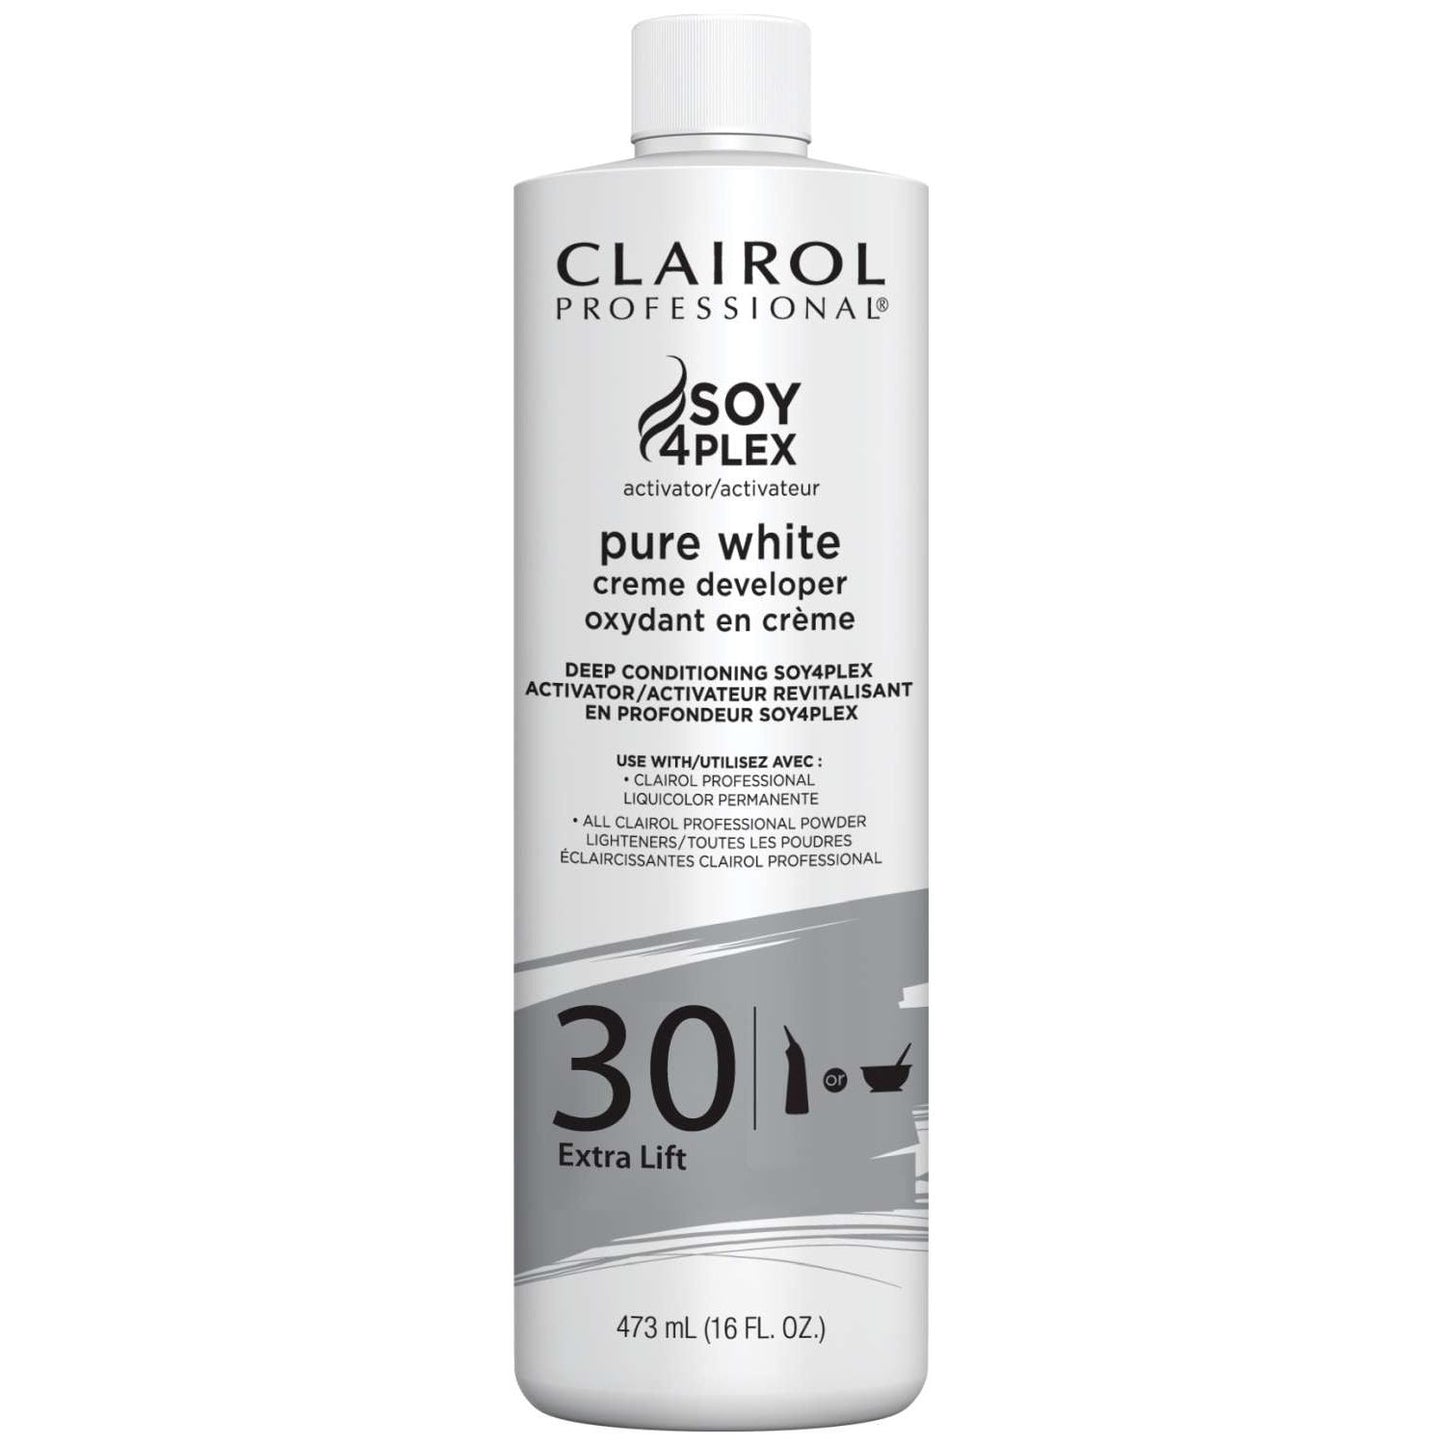 Clairol Professional Pure White 30 Volume Cream Developer